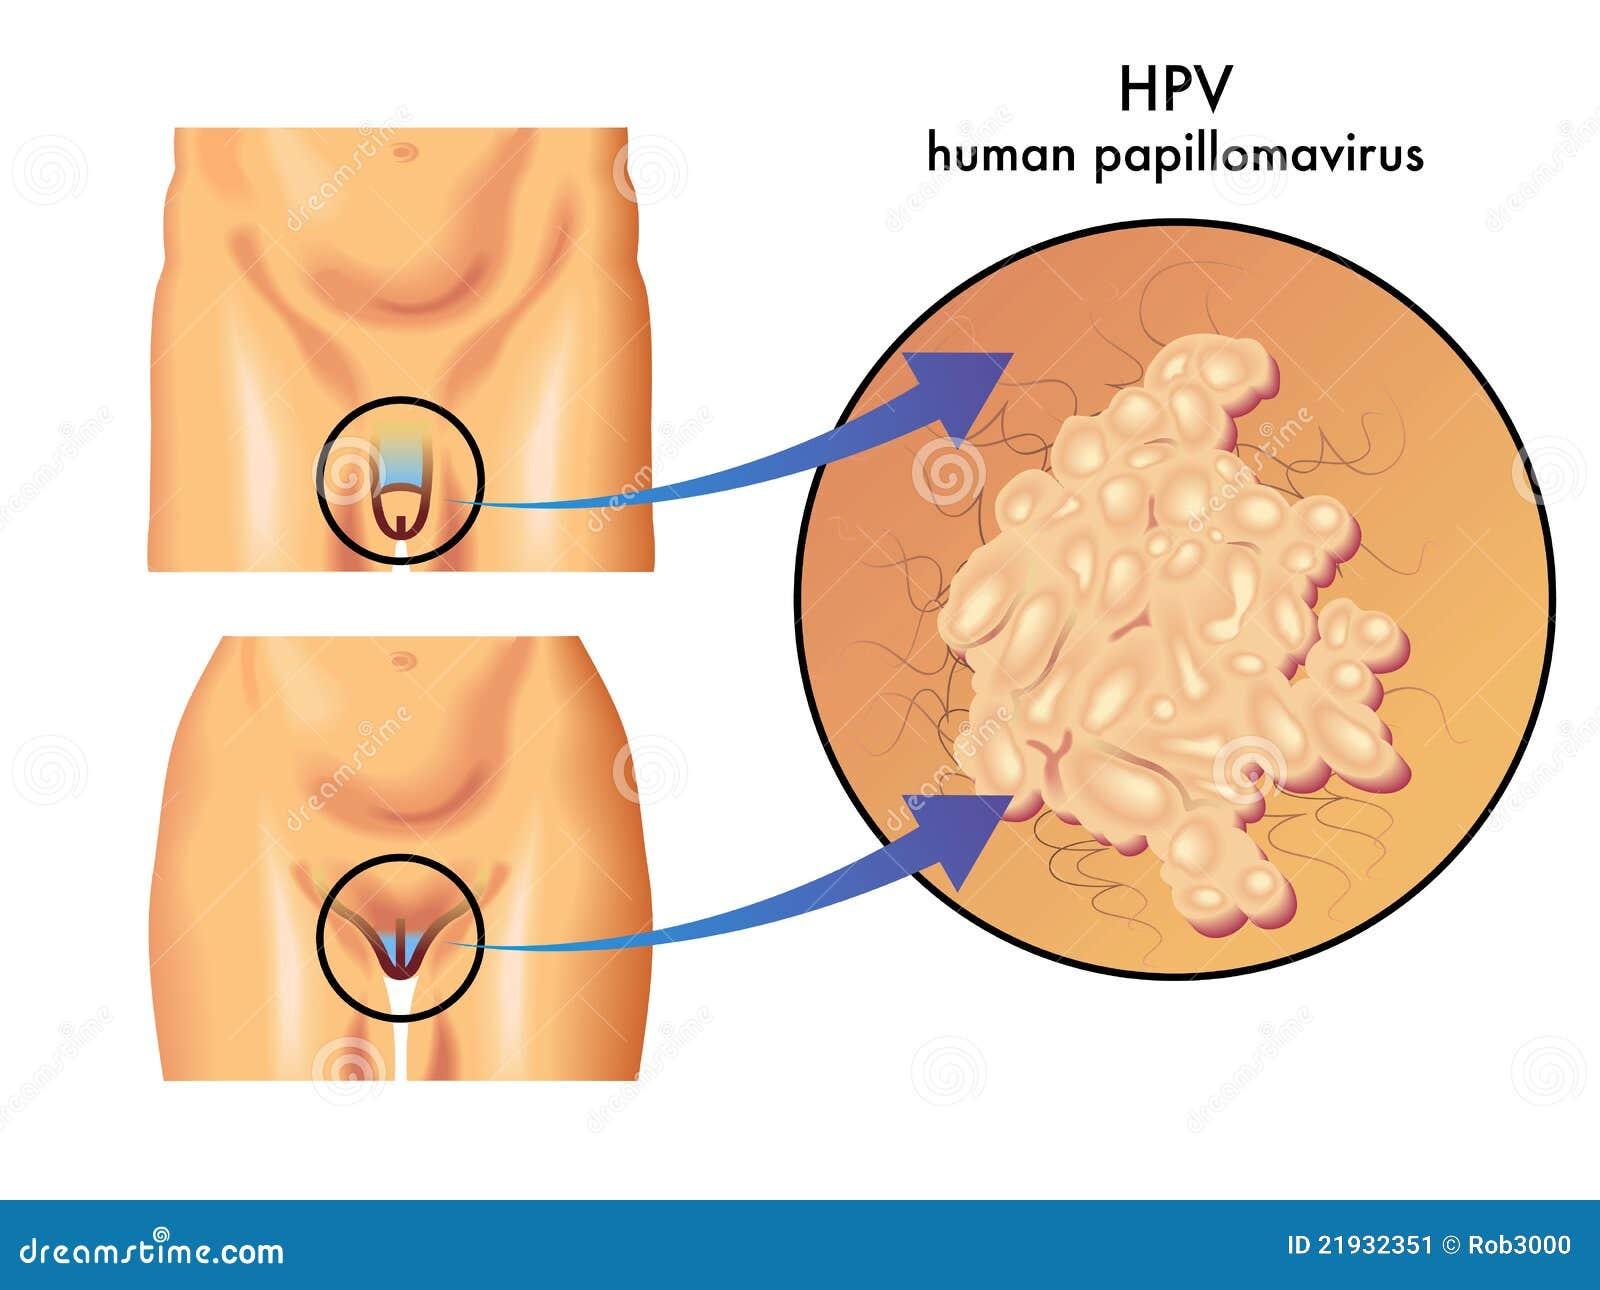 human papillomavirus what is it)